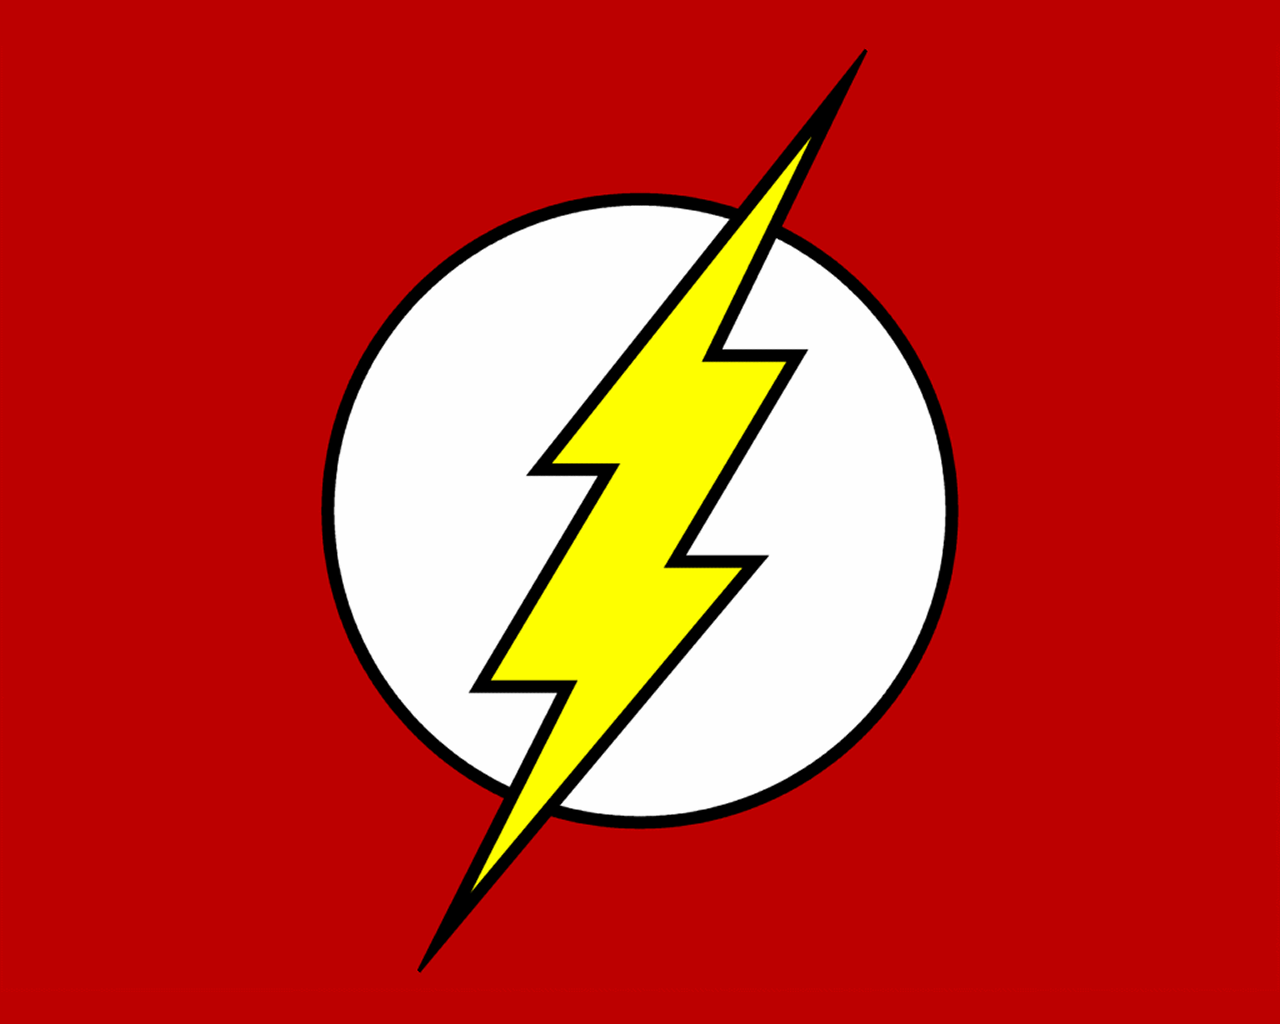 Unsere besten Favoriten - Wählen Sie auf dieser Seite die The flash logo Ihrer Träume